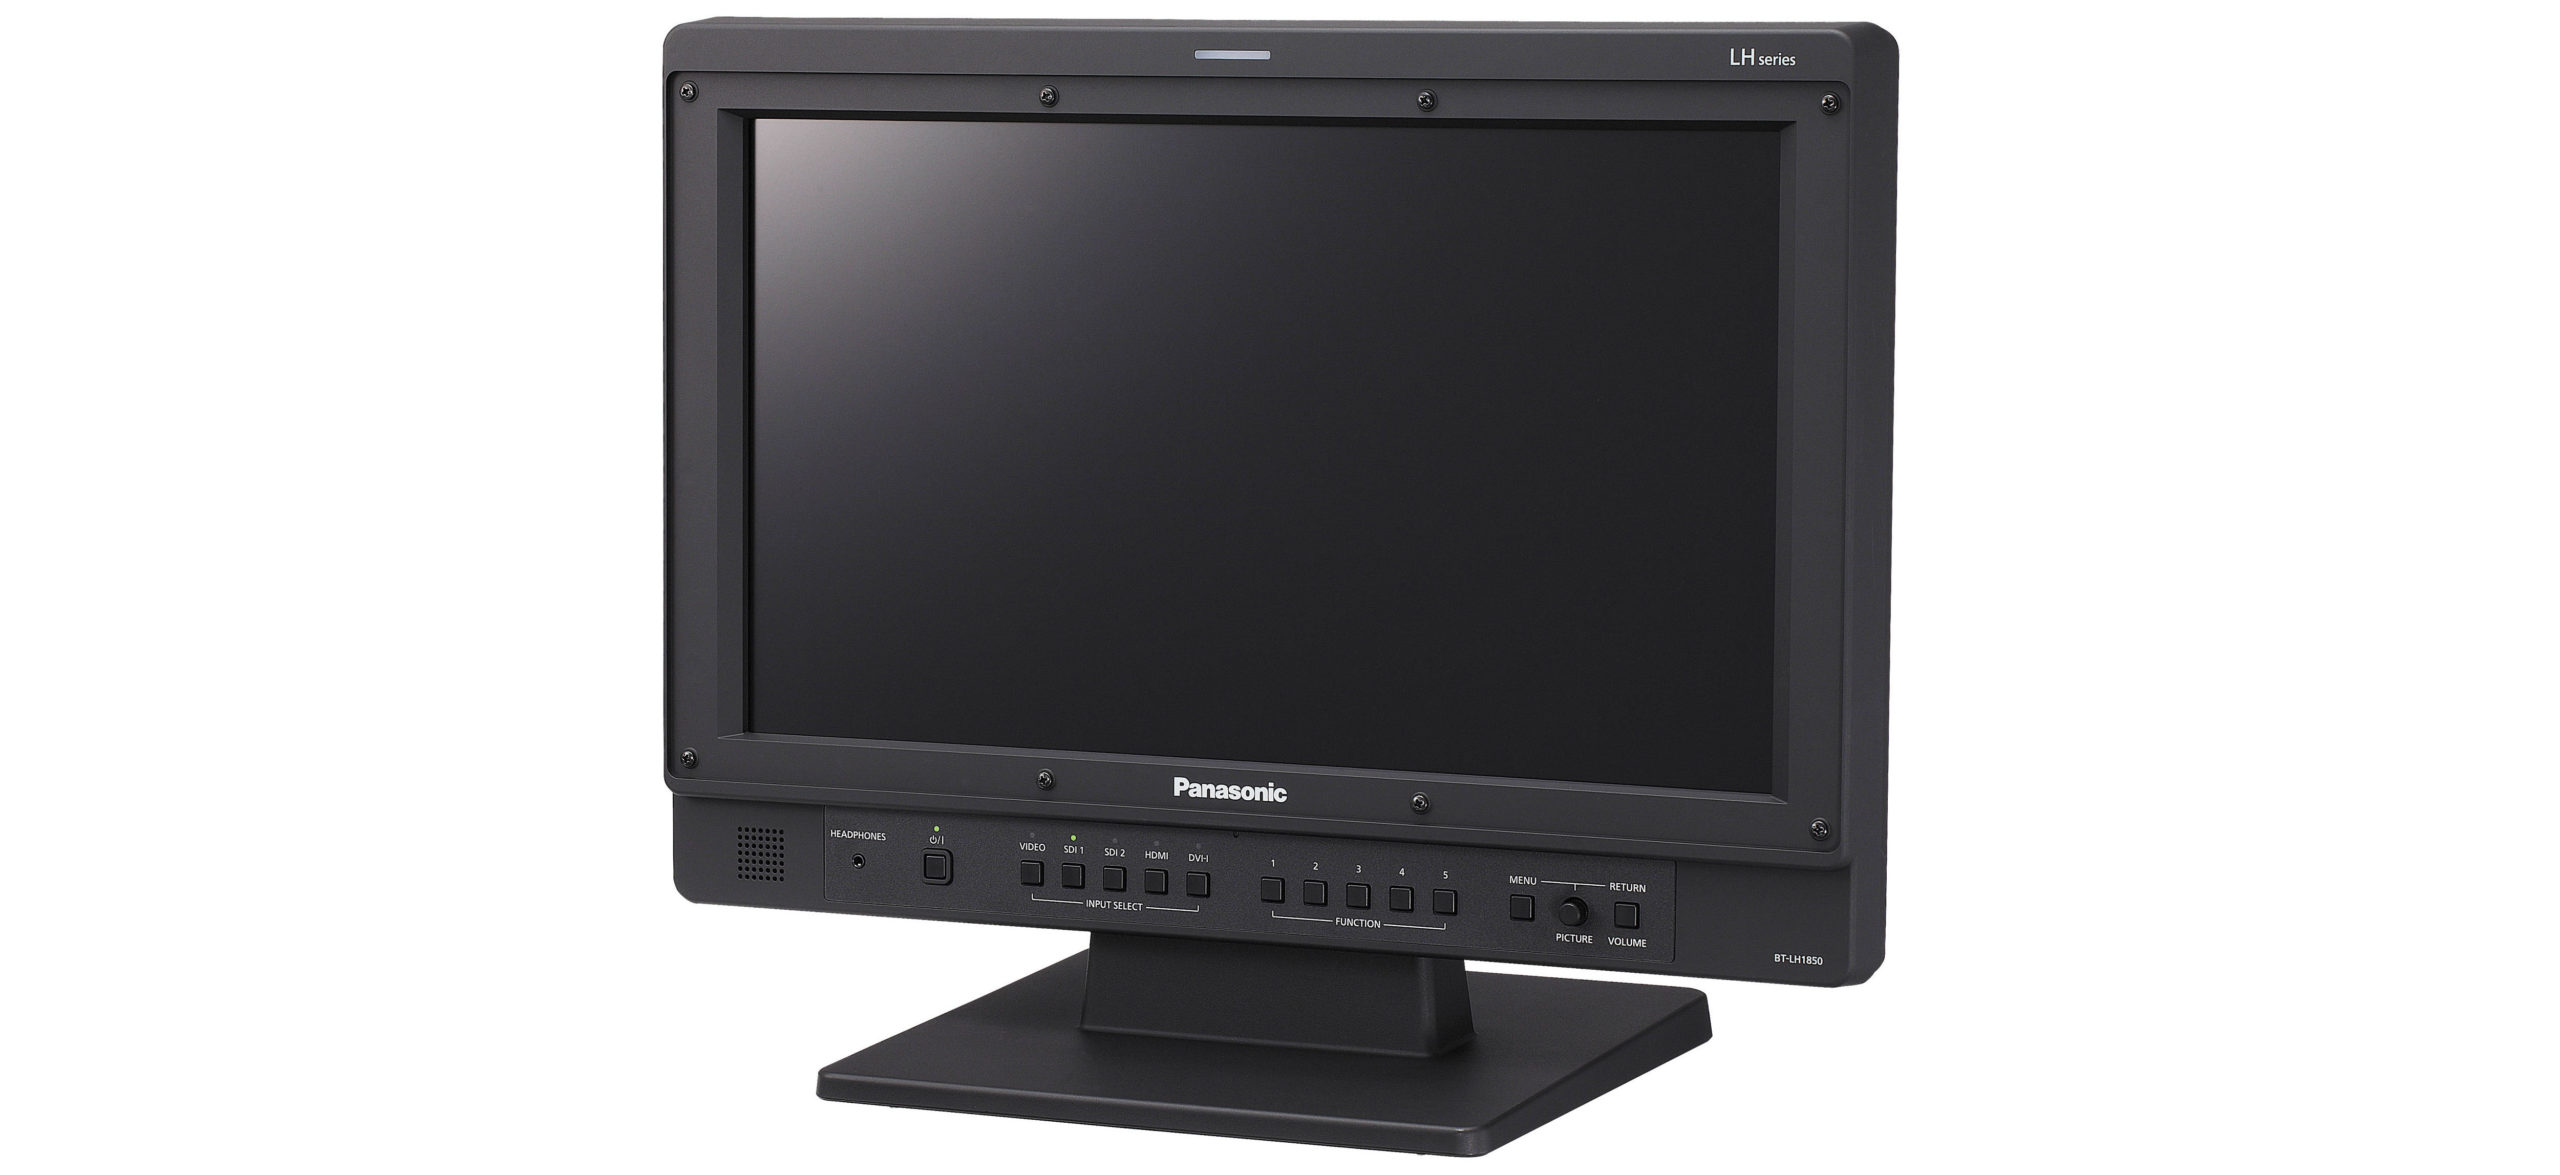 Panasonic BT-LH1850 Monitor Rental Tampa Florida